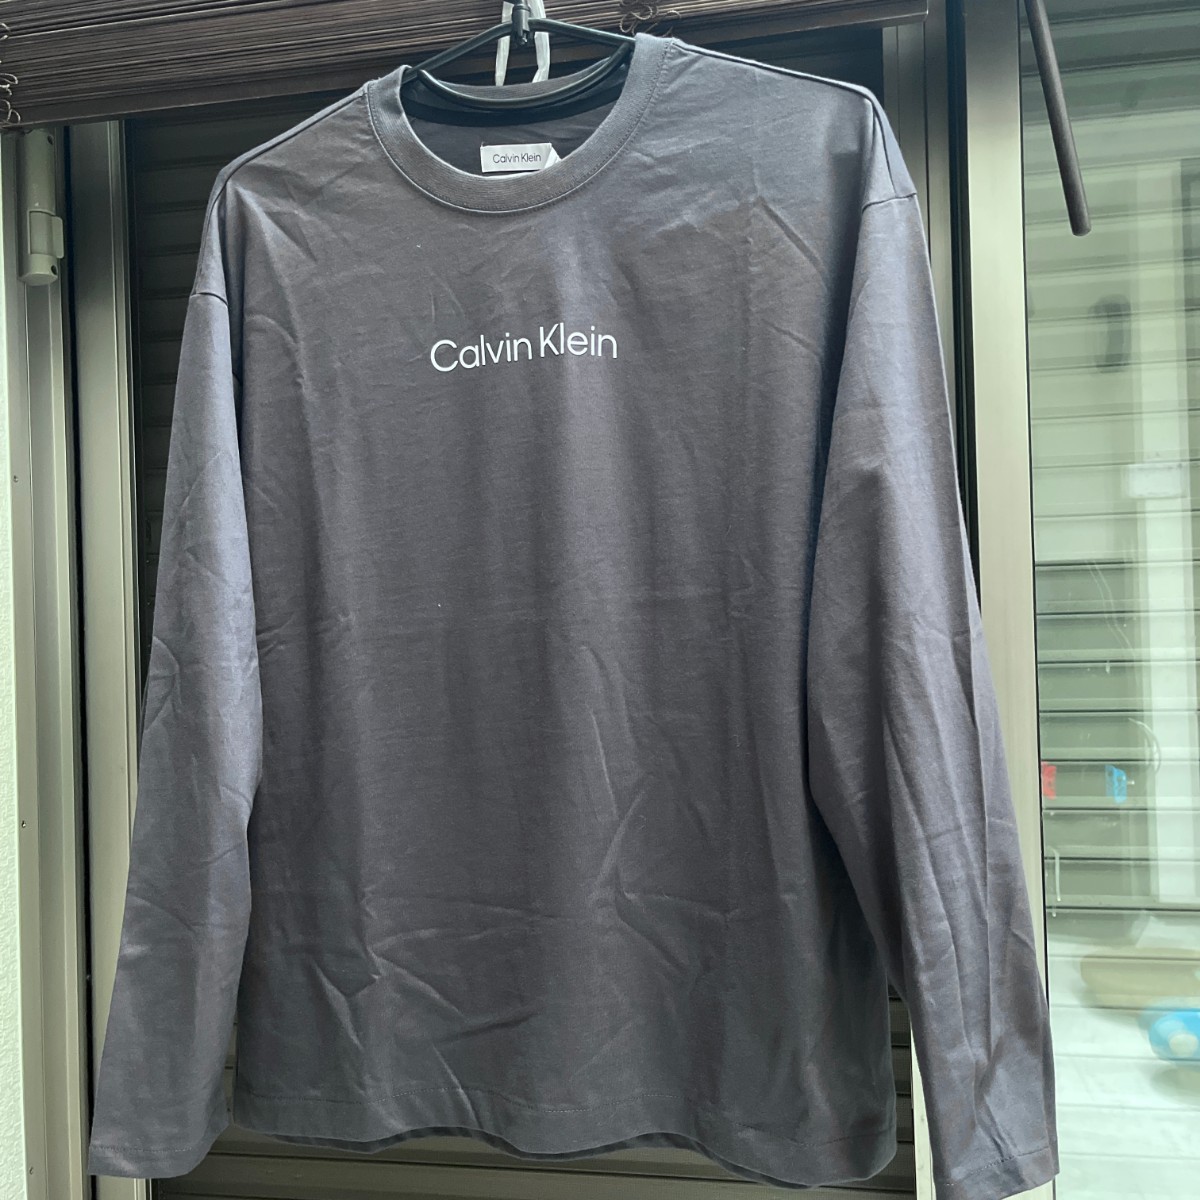 CK カルバンクライン Calvin Klein ロゴ トレーナー 正規品 スウェット パーカー ブランド ロングTシャツ グレー メンズ L/XL長袖Tシャツ